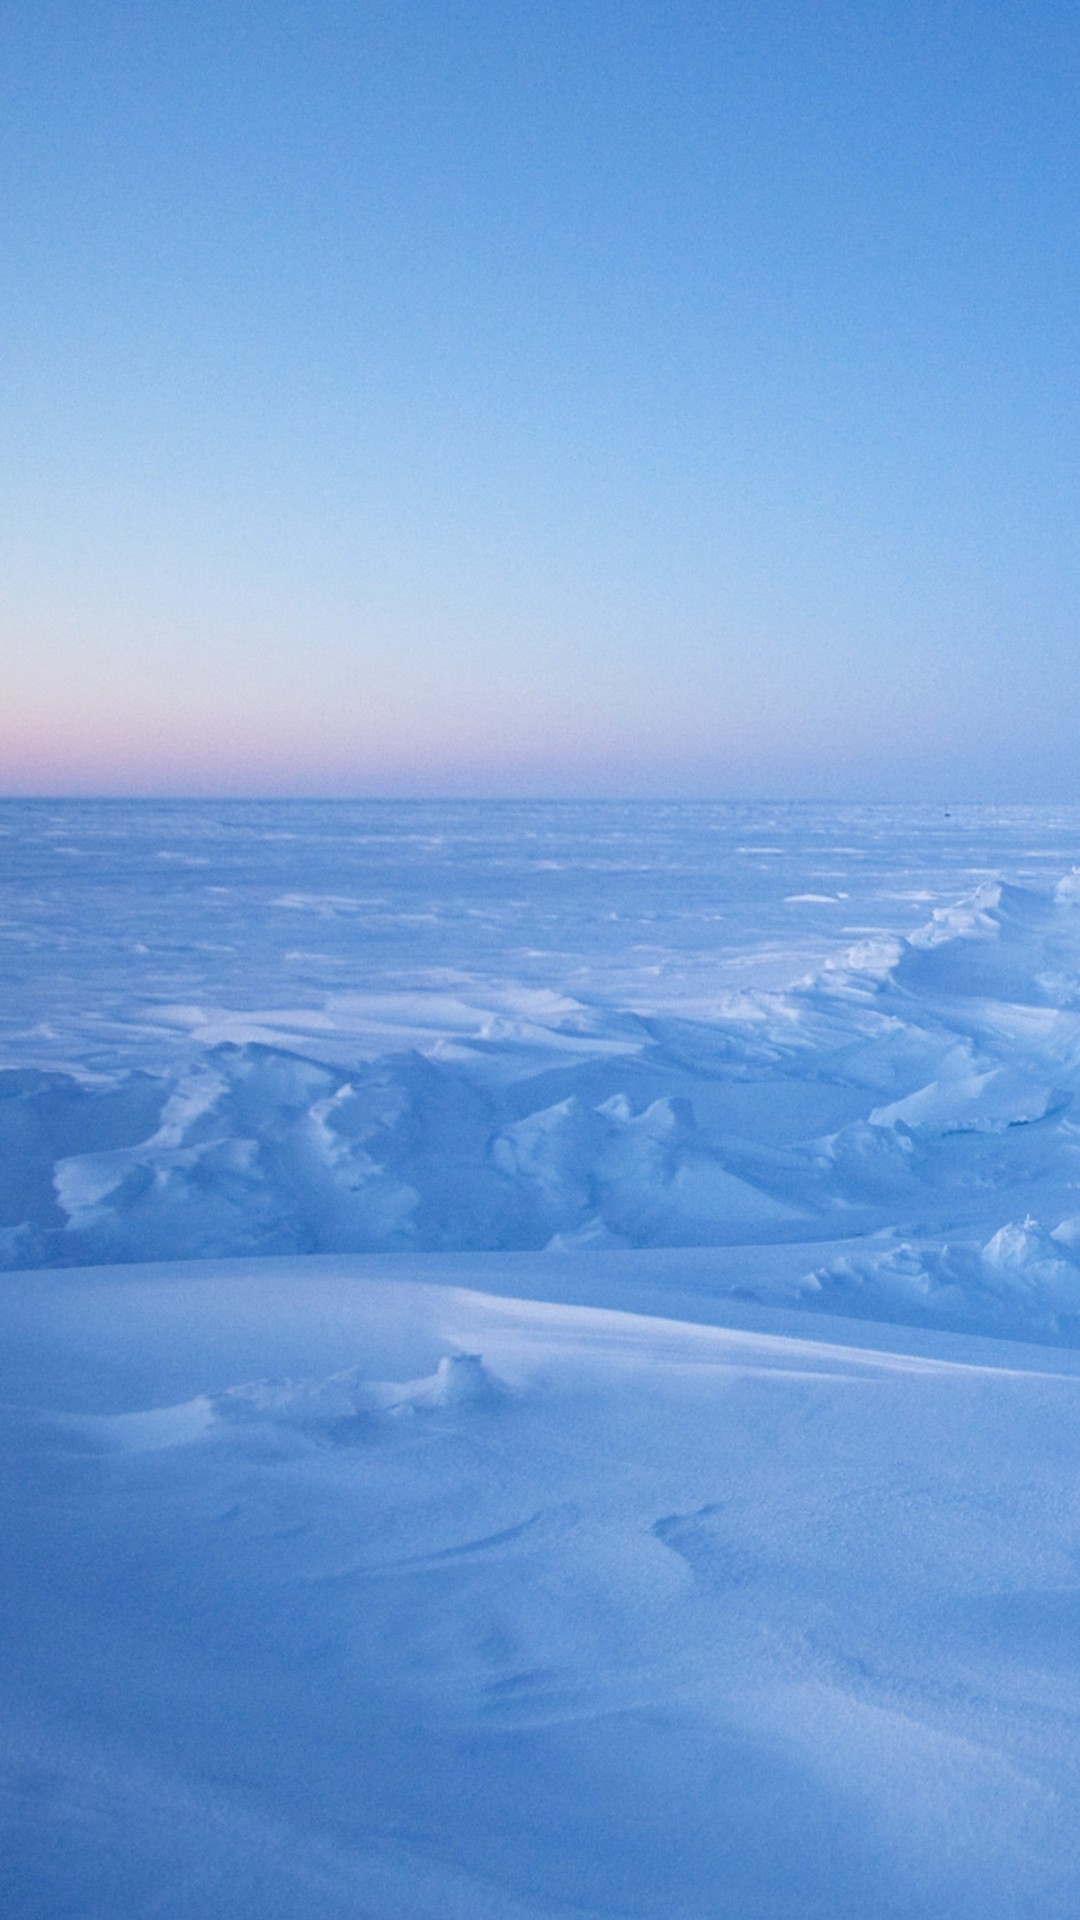 nordpol tapete,himmel,blau,arktischer ozean,arktis,atmosphäre